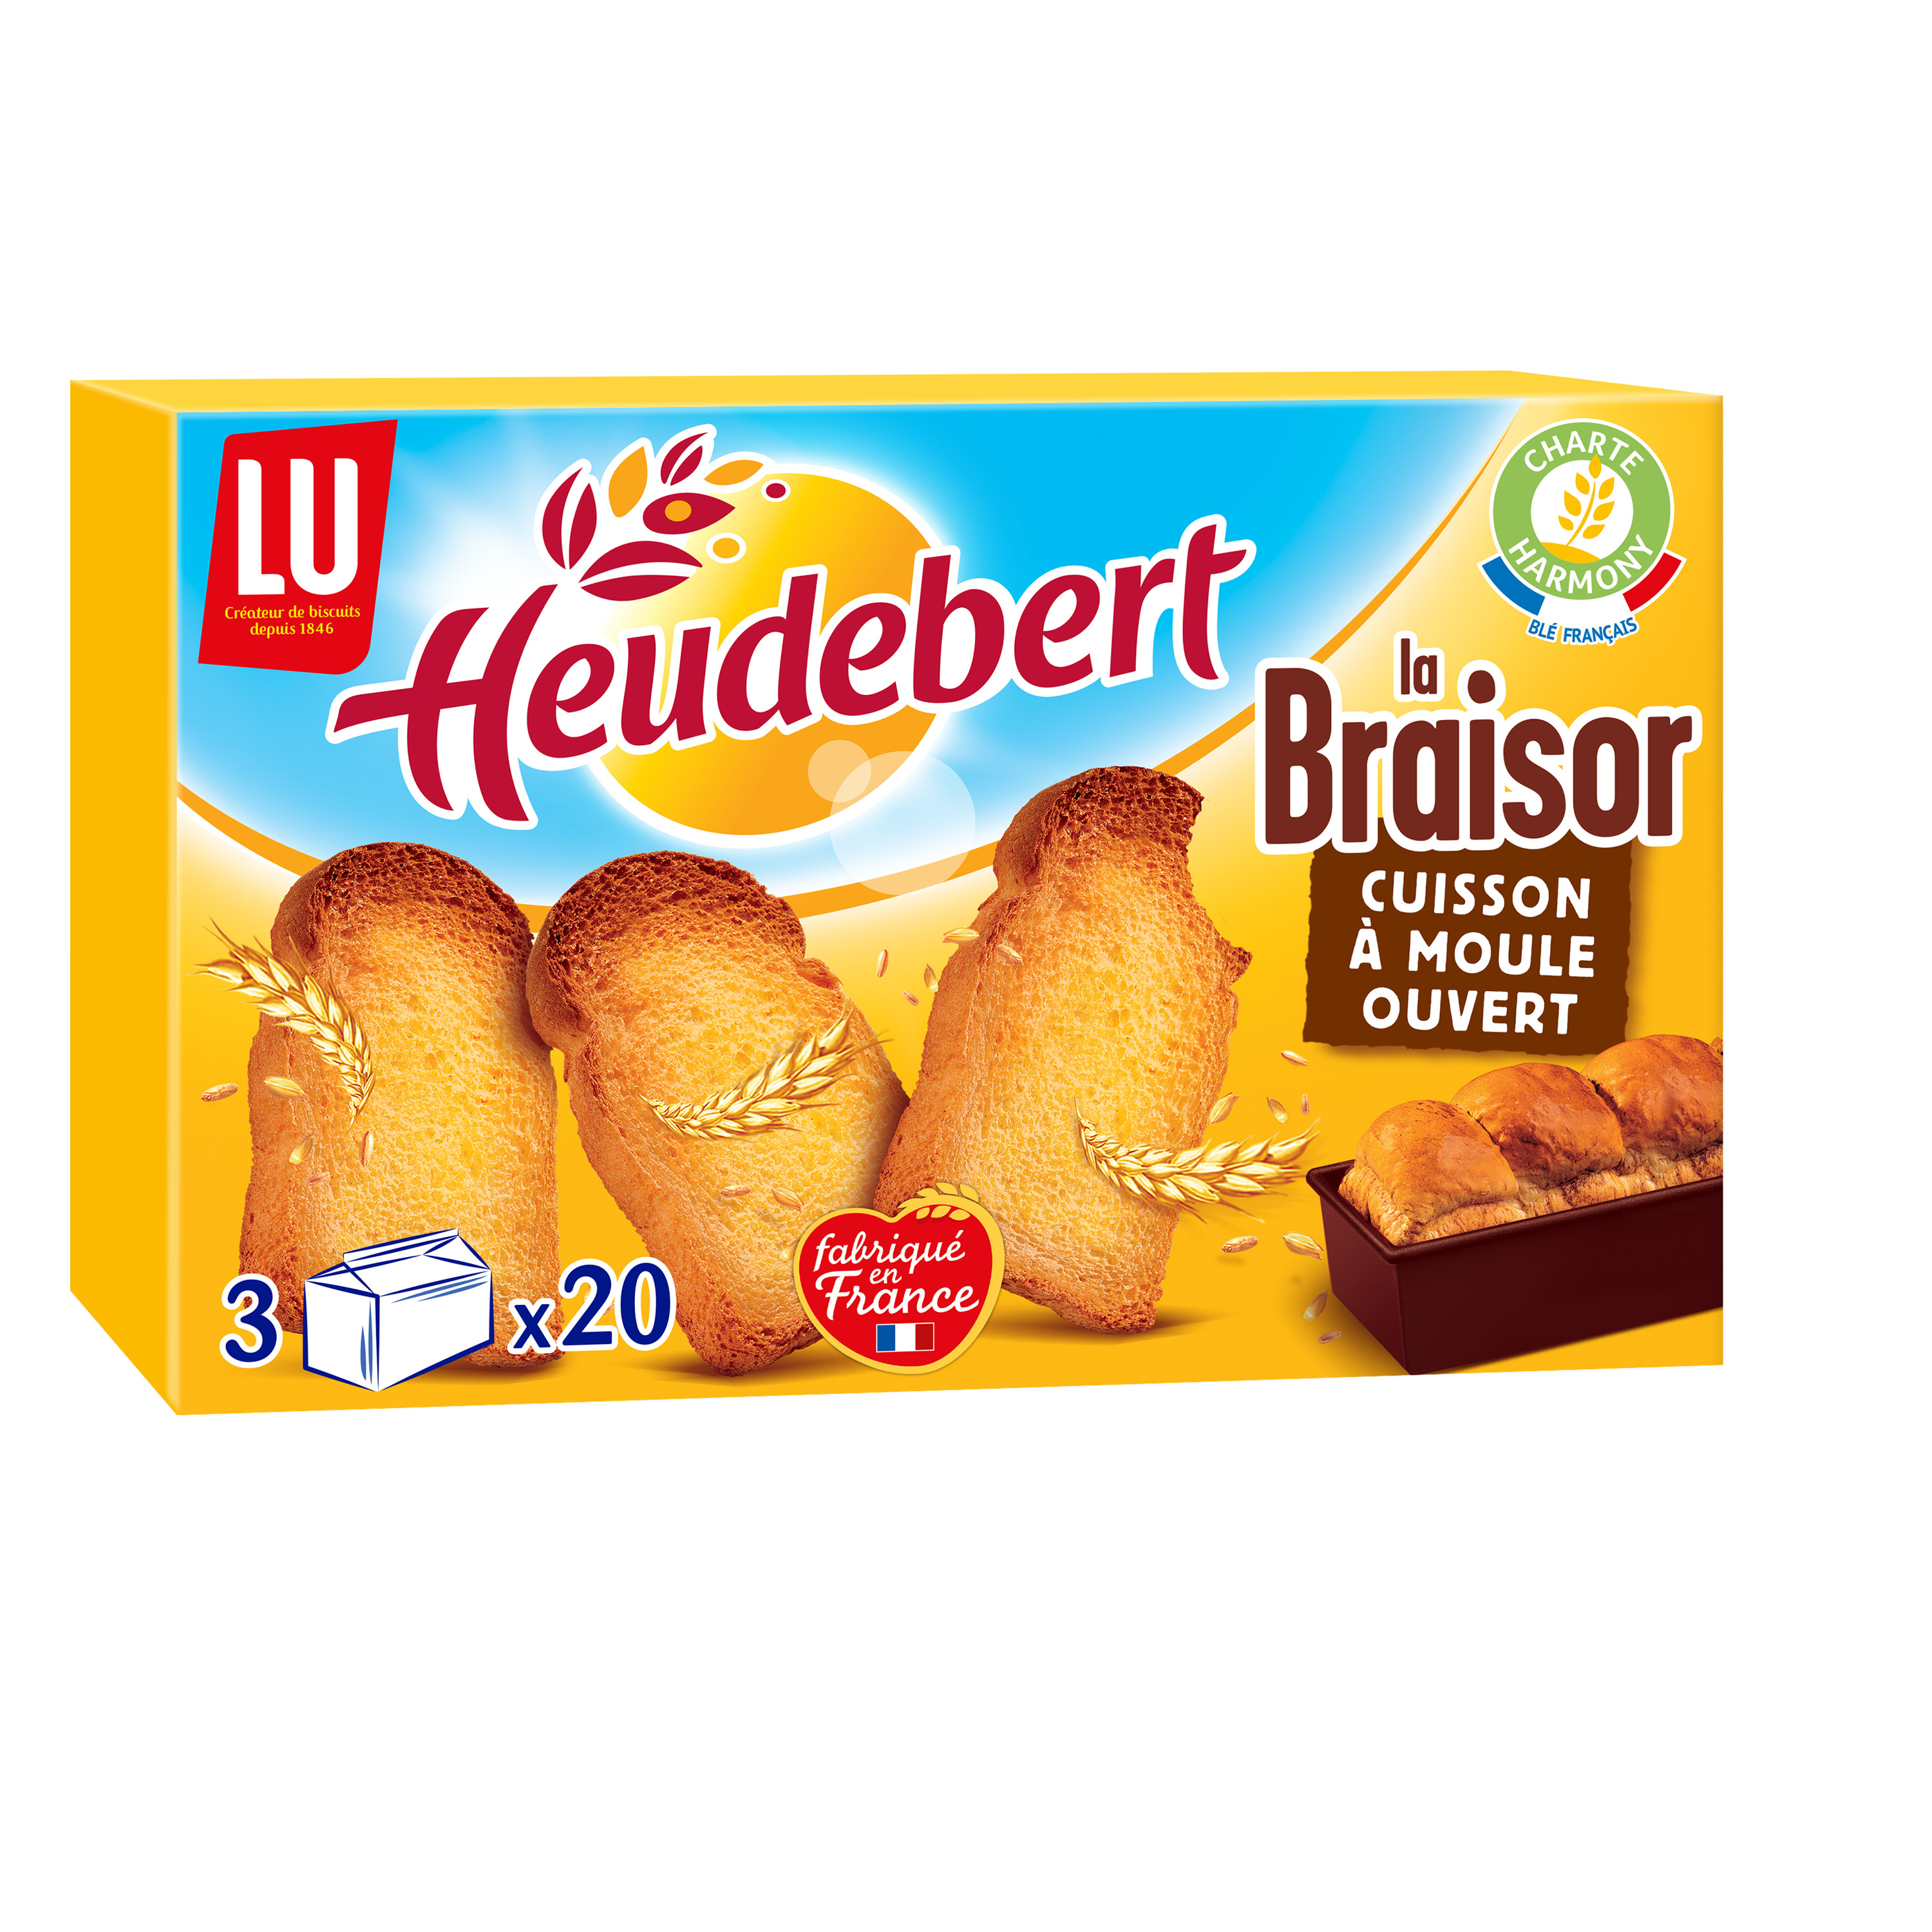 HEUDEBERT Biscottes La Braisor 3x20 biscottes 500g pas cher 